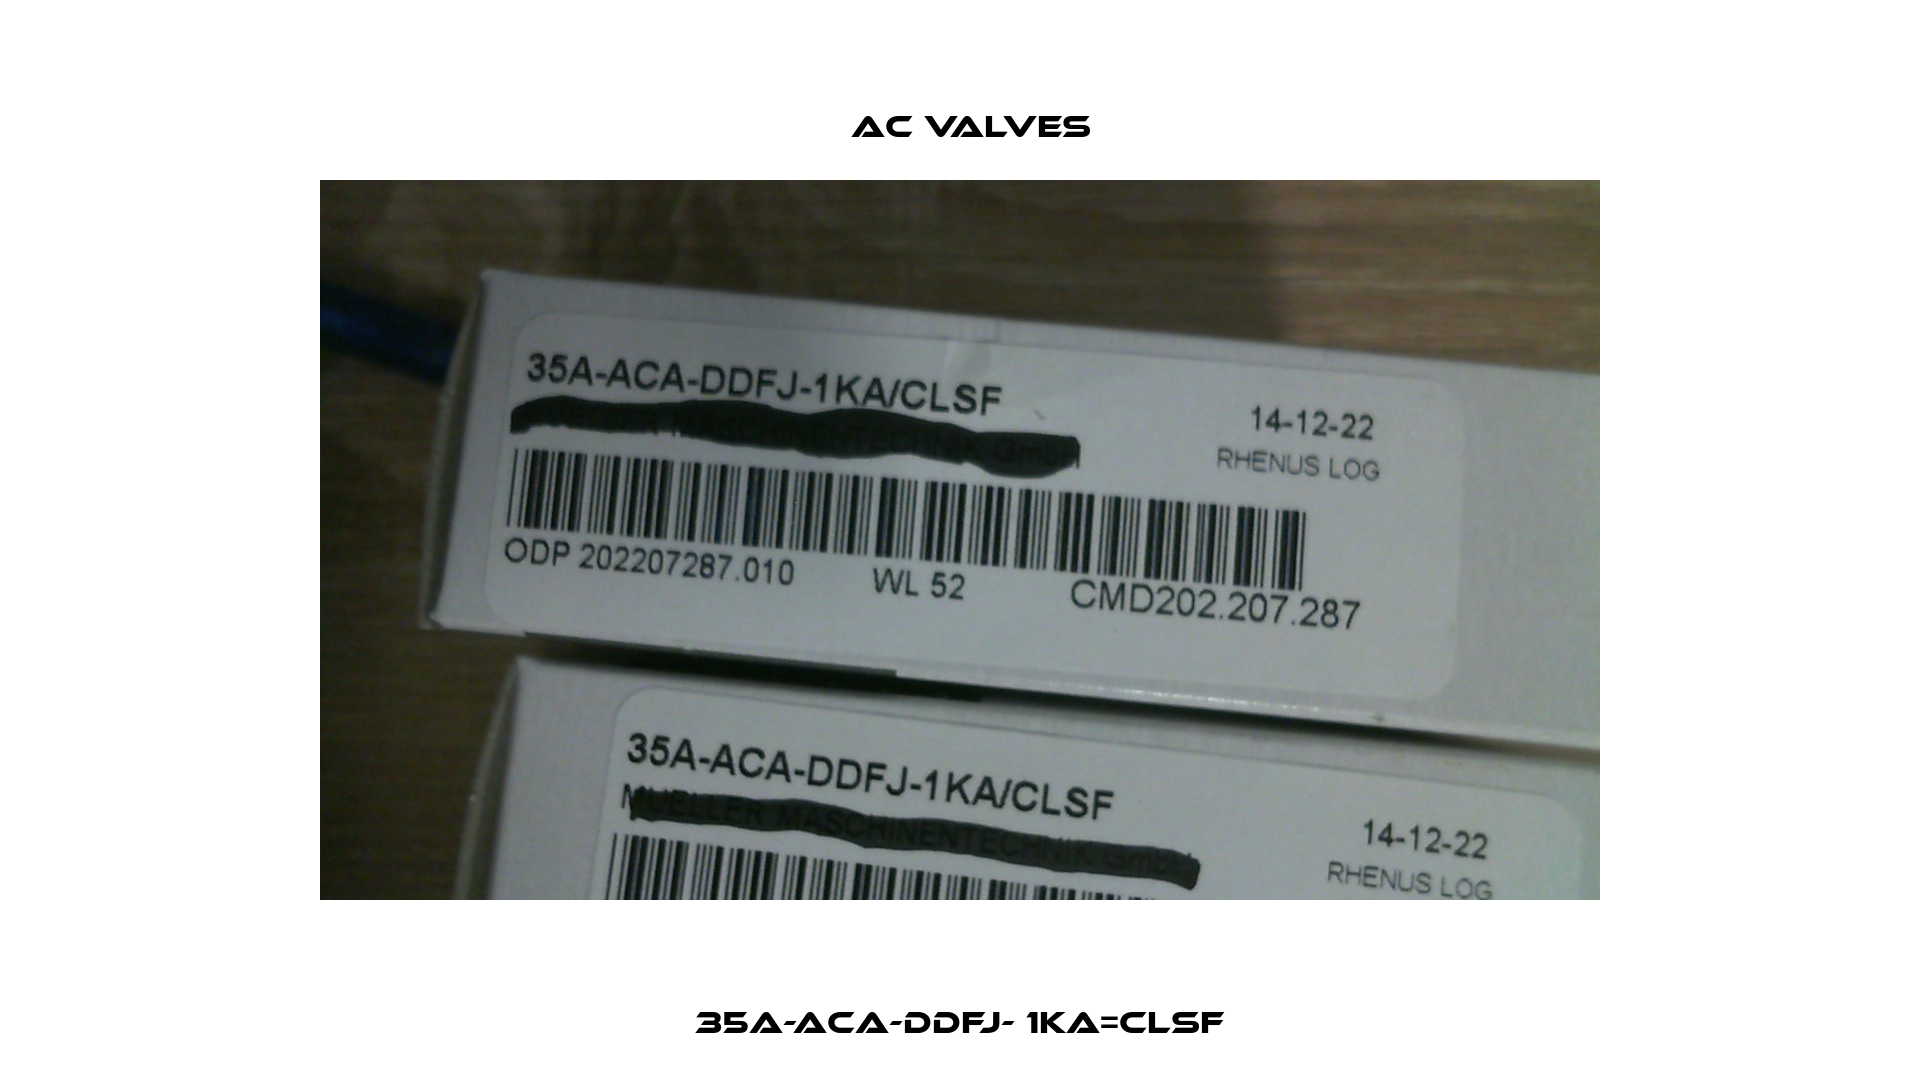 35A-ACA-DDFJ- 1KA=CLSF МAC Valves